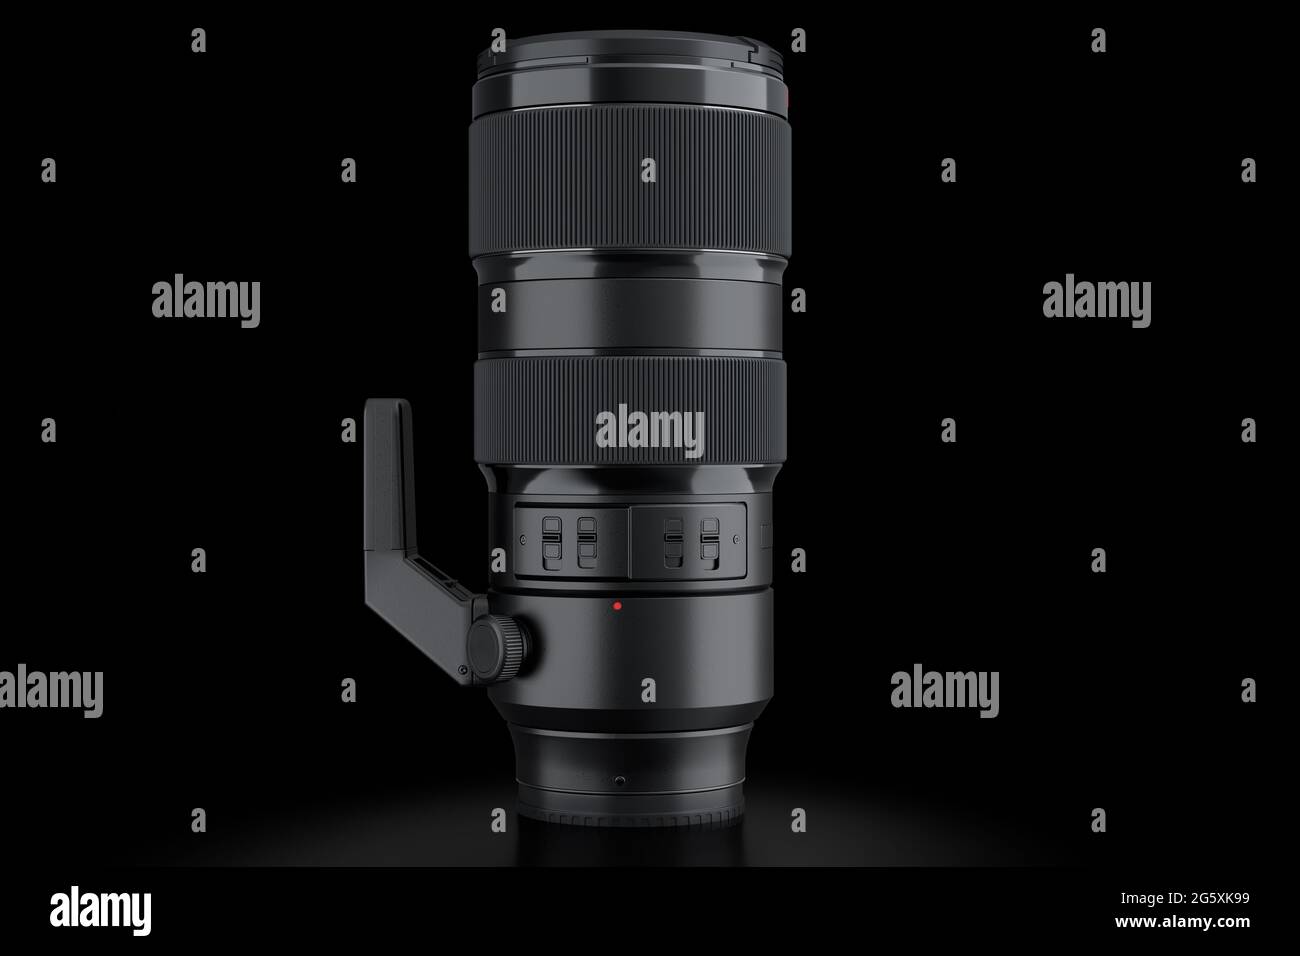 Moderna e inexistente lente de cámara telescópica DSLR sobre fondo negro Foto de stock